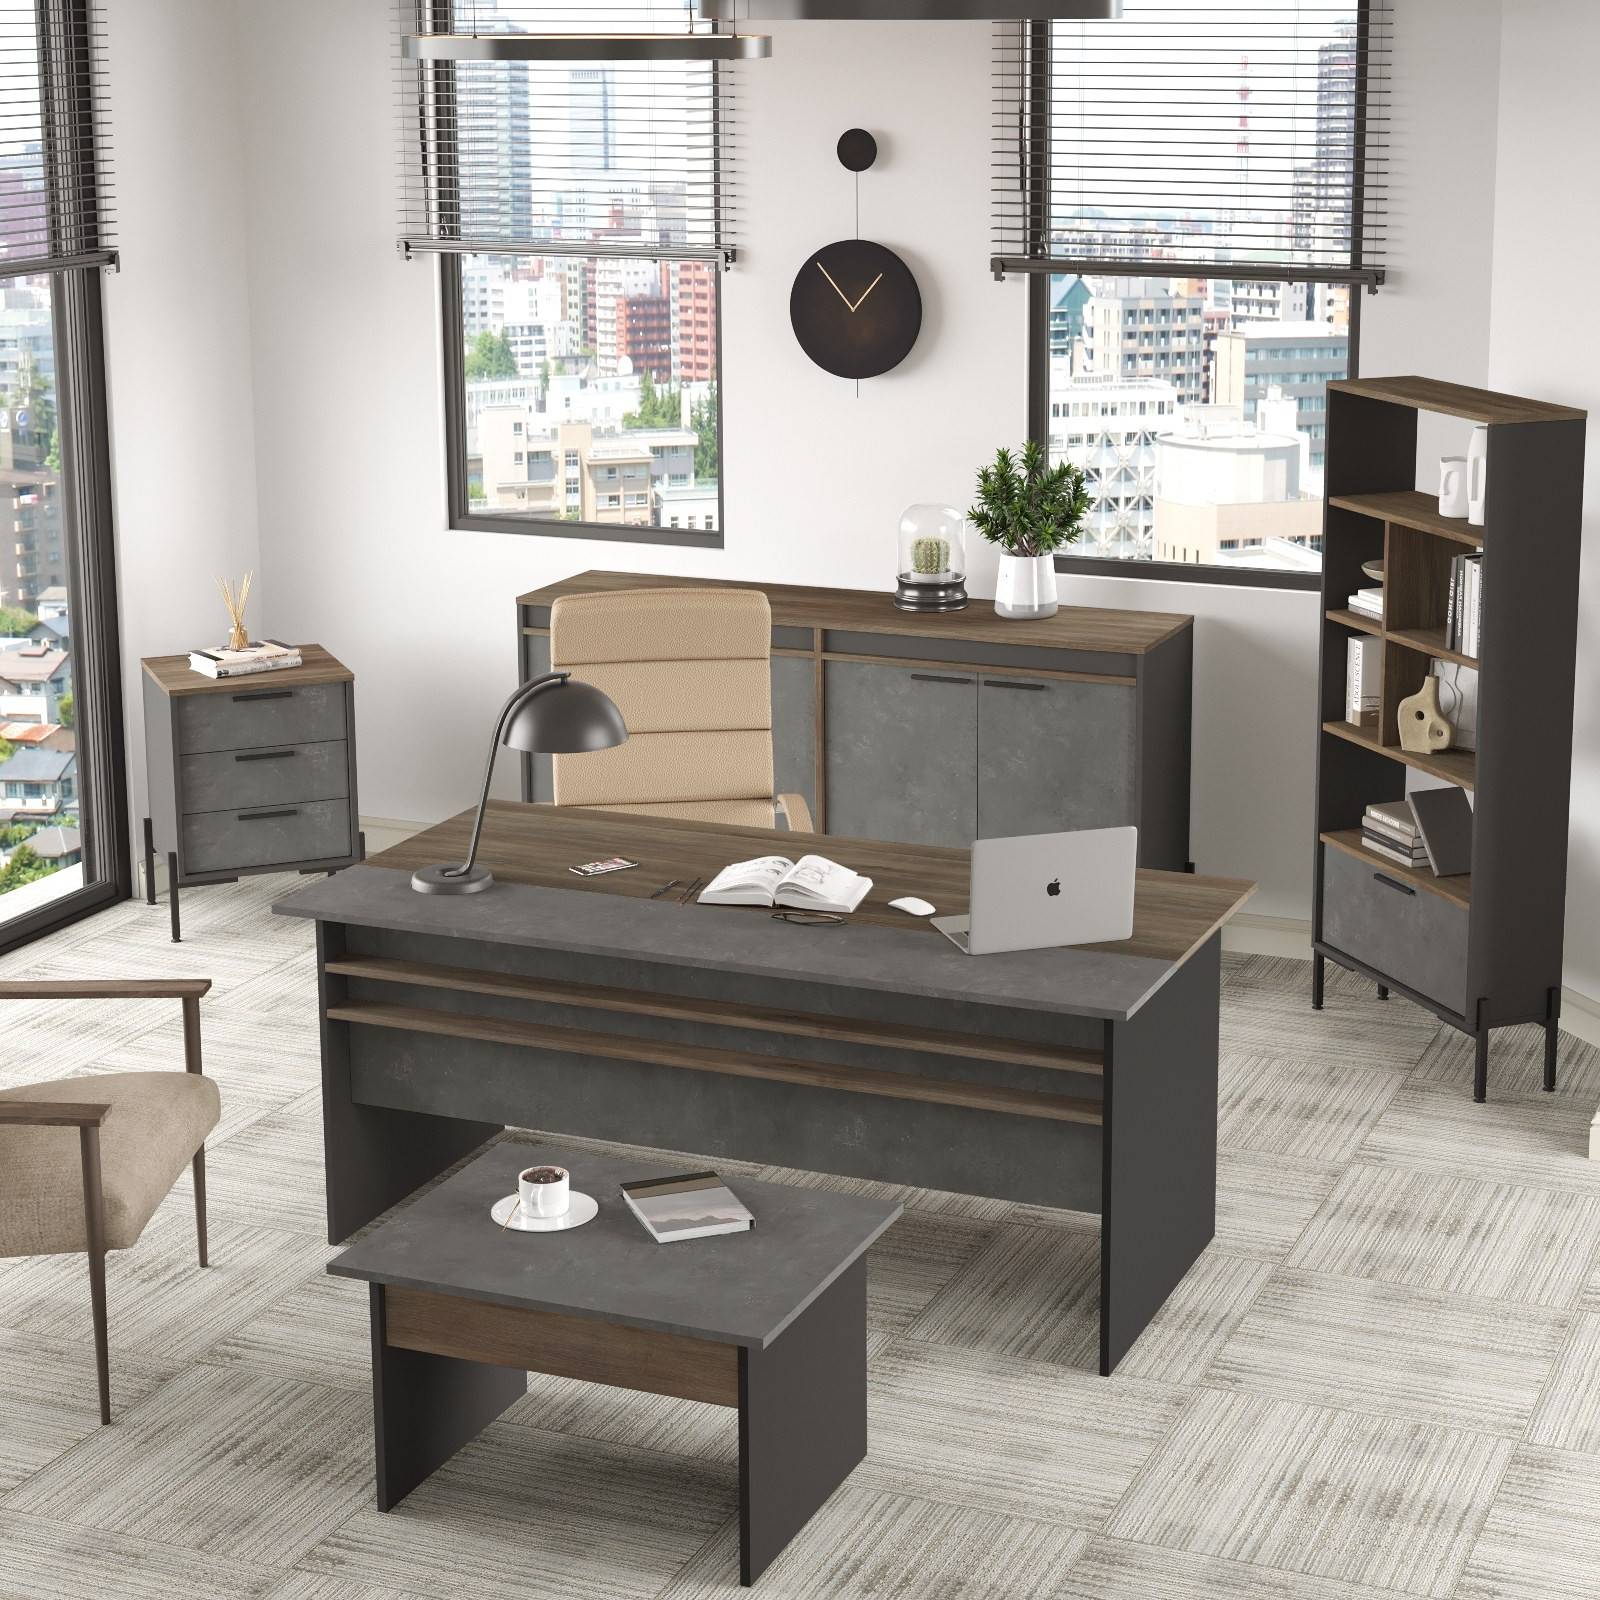 Set completo di mobili da ufficio Office Edition in grigio chiaro